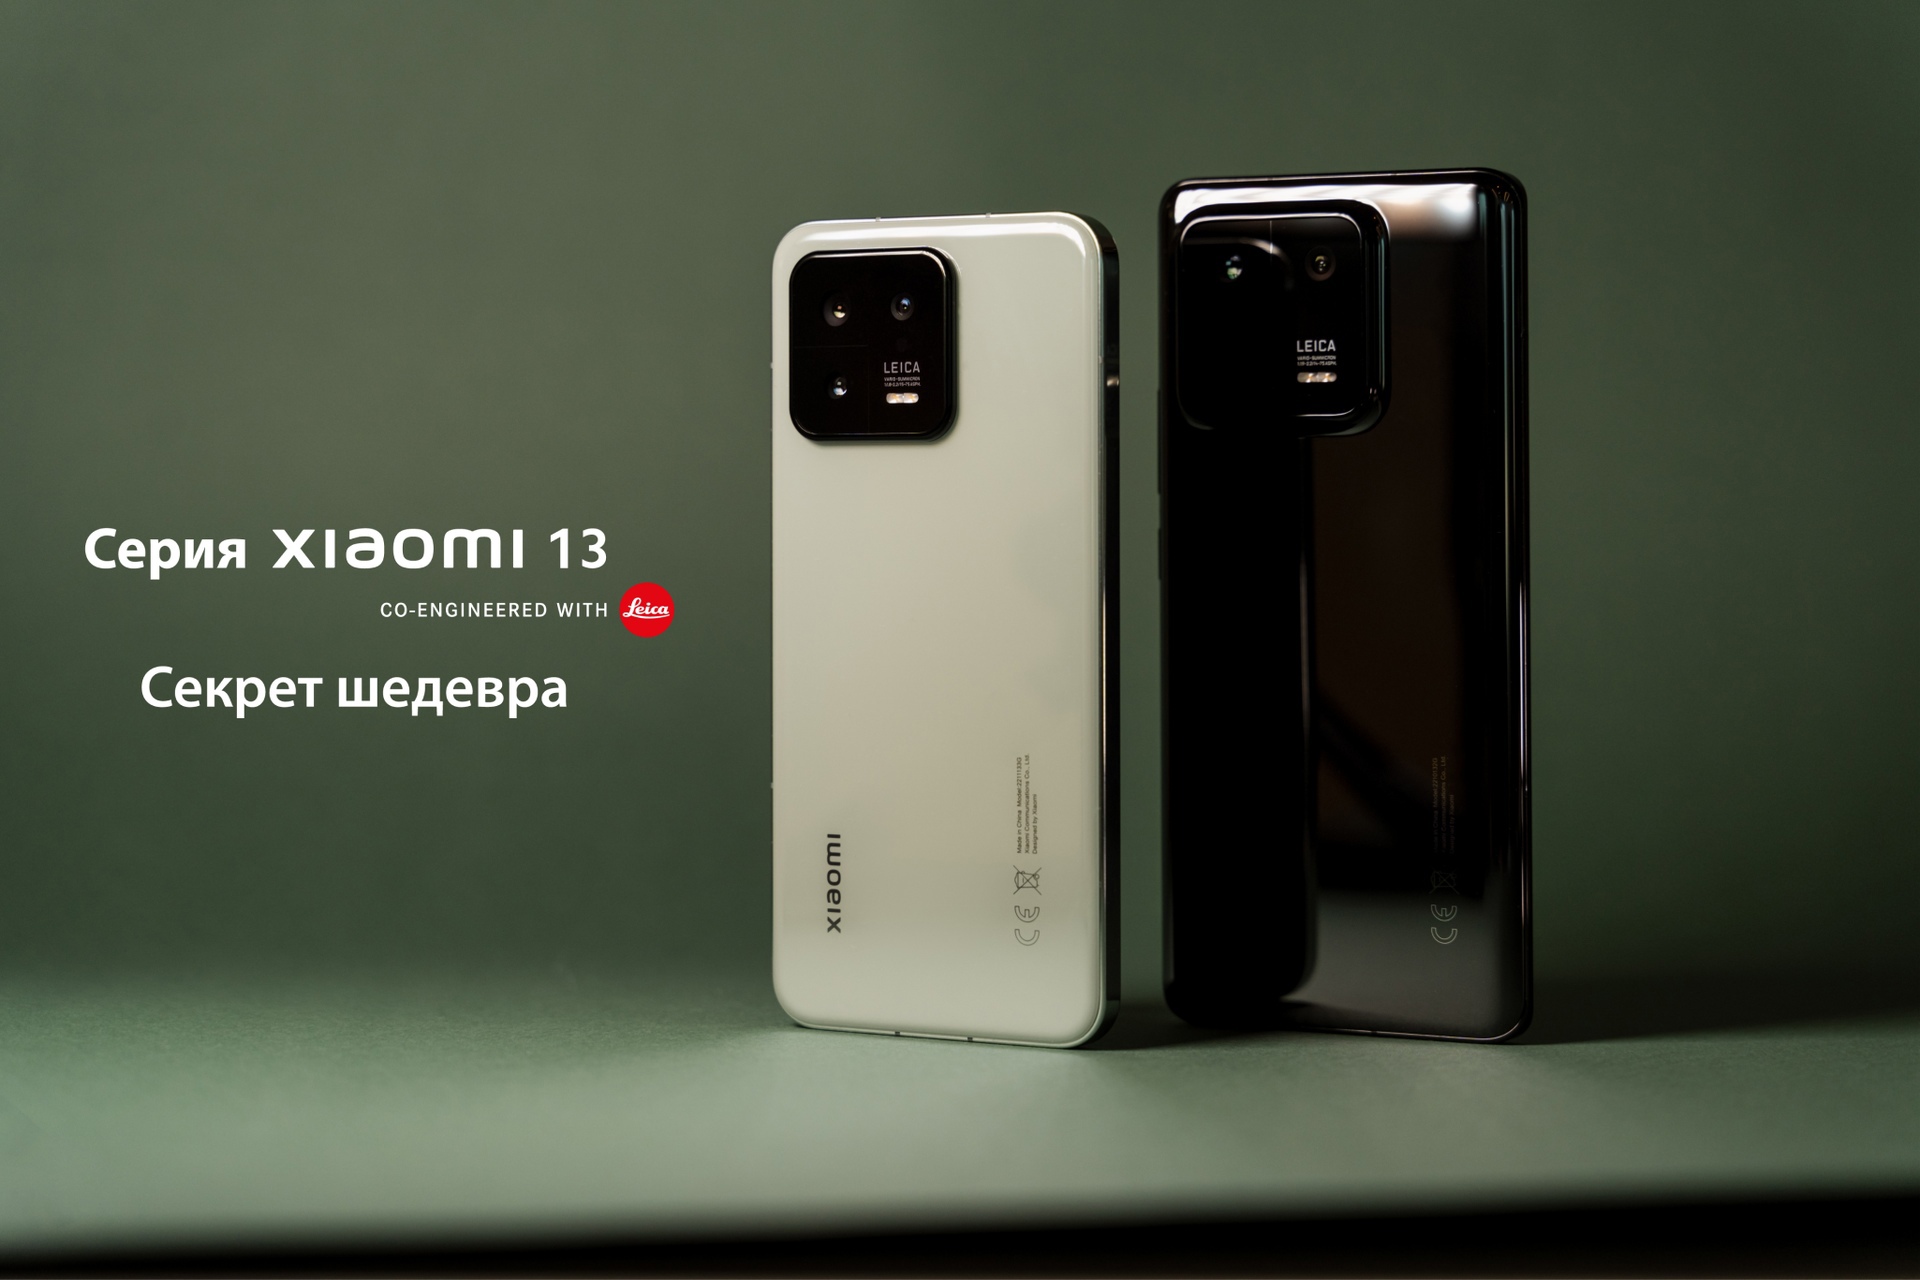 Смартфоны серии Xiaomi 13 стали доступны для покупки в России